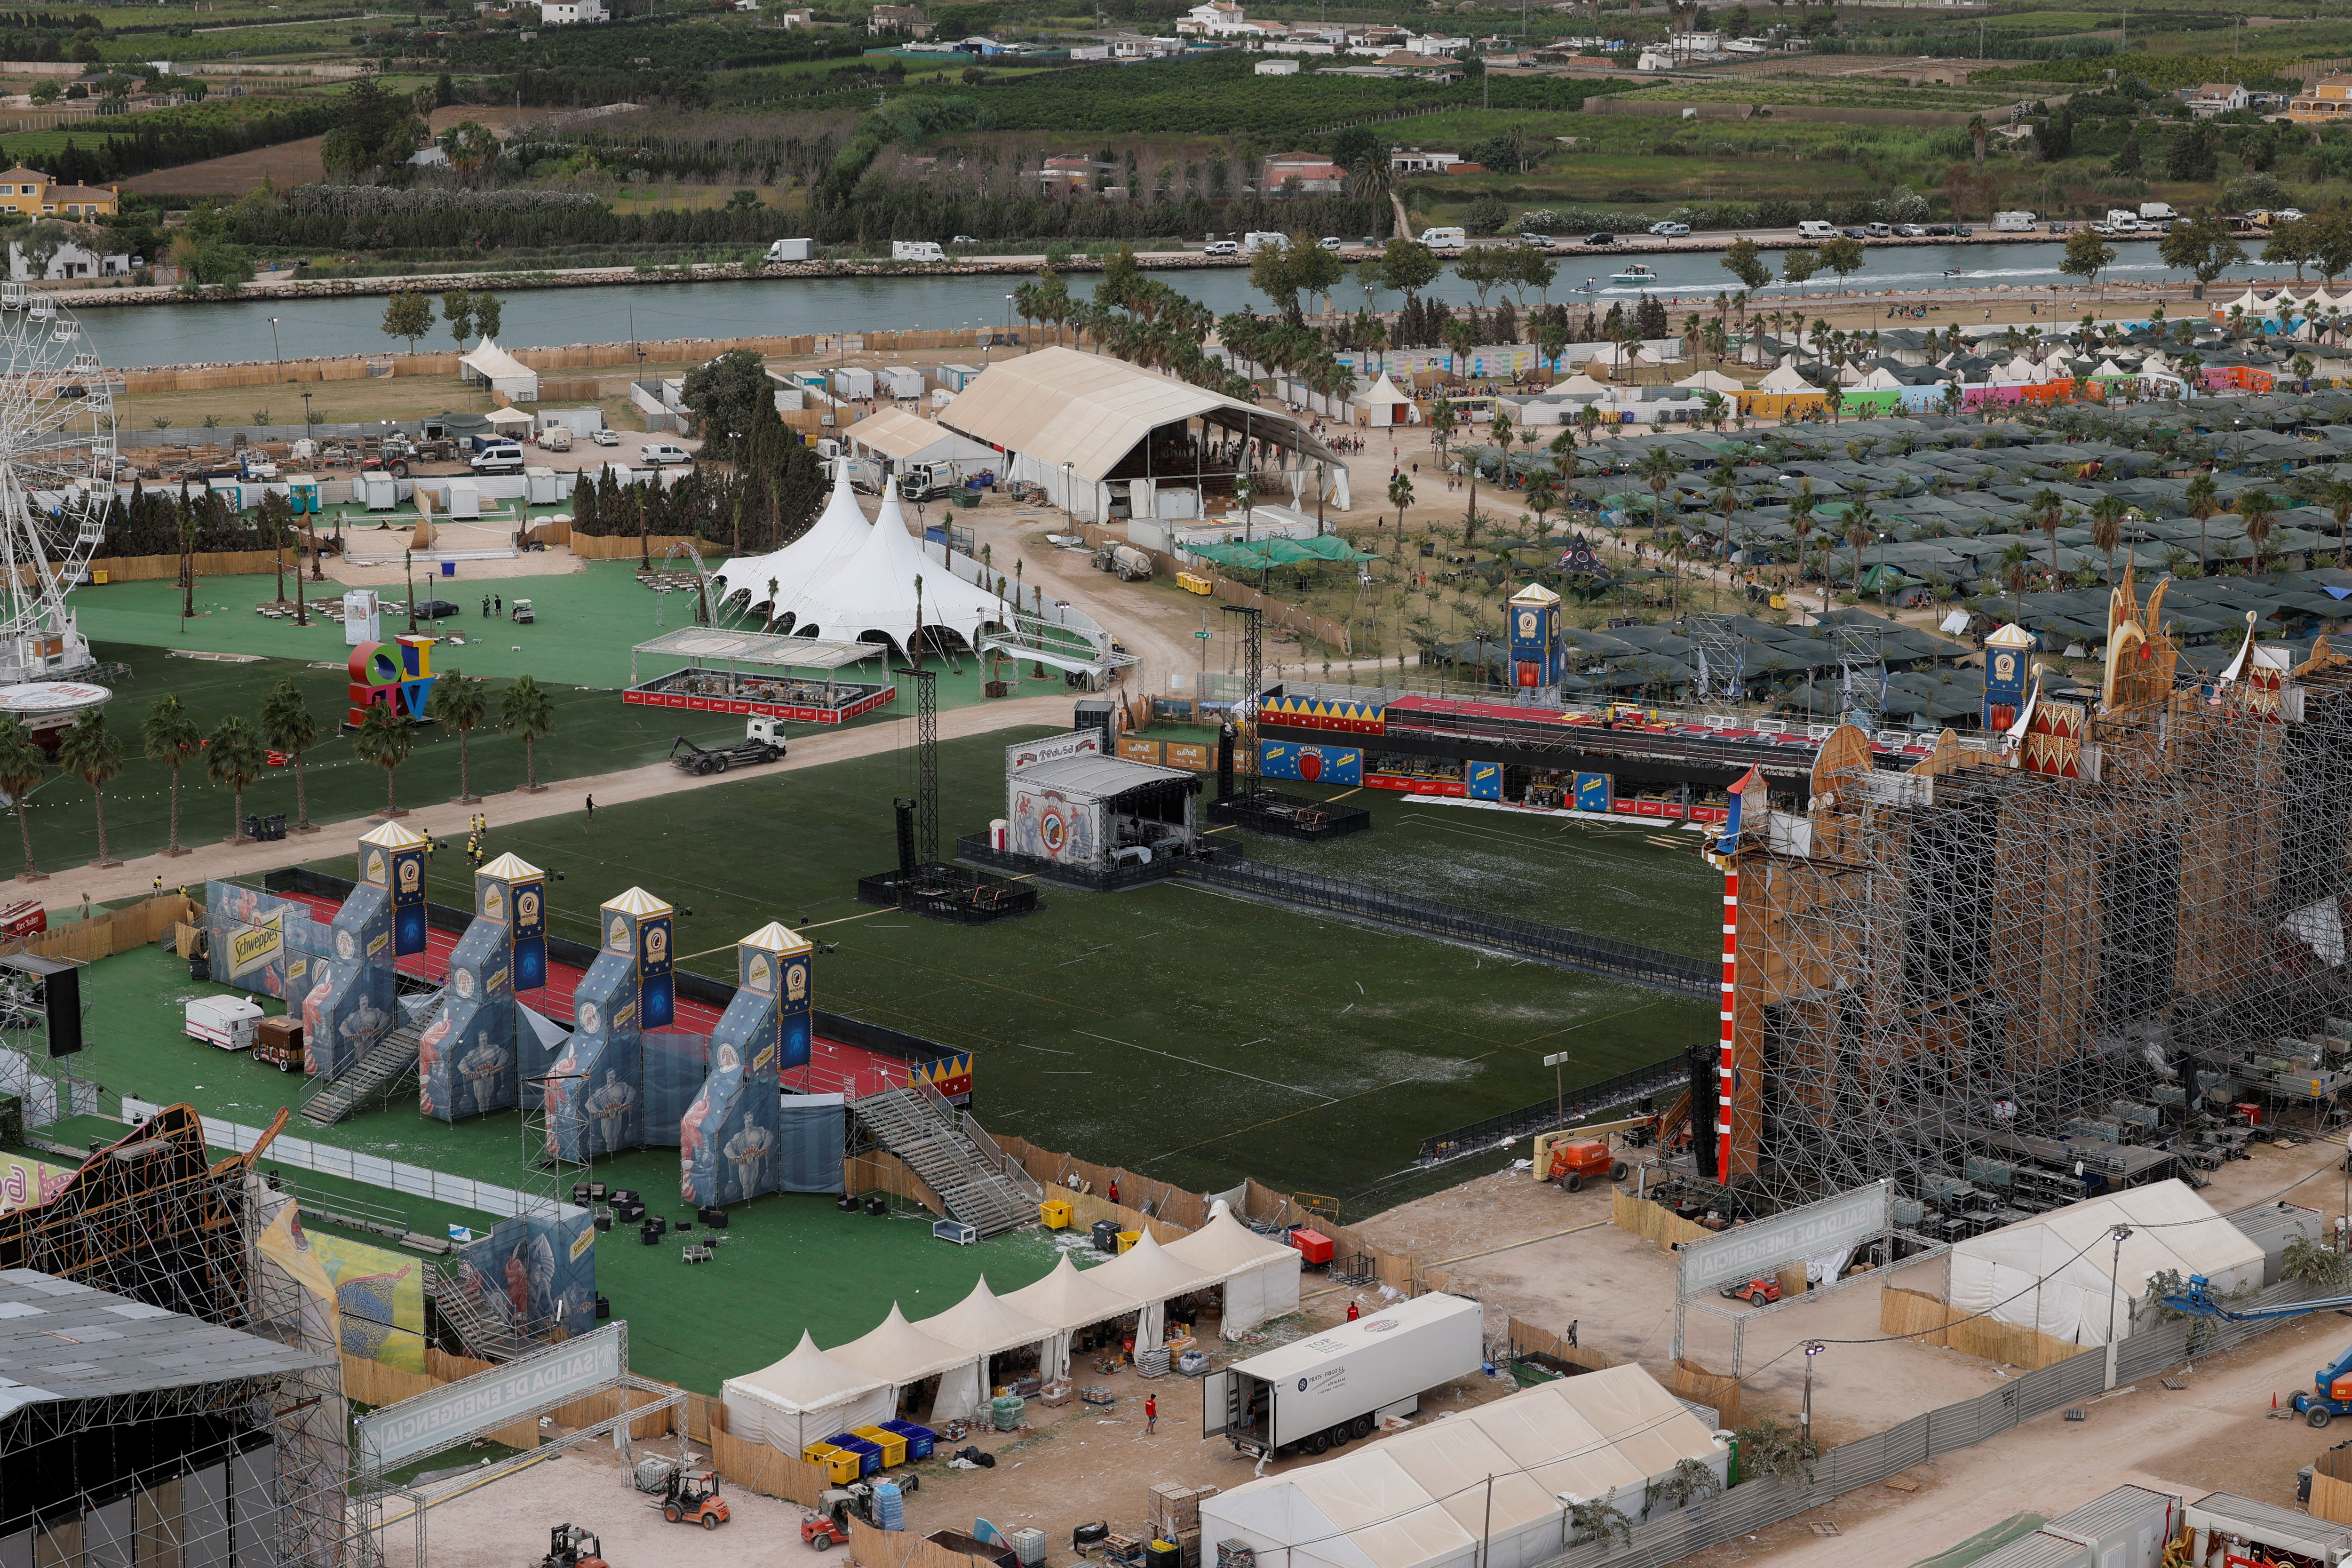 Una vista general del predio donde se desarrollaba el festival (REUTERS/Eva Manez)